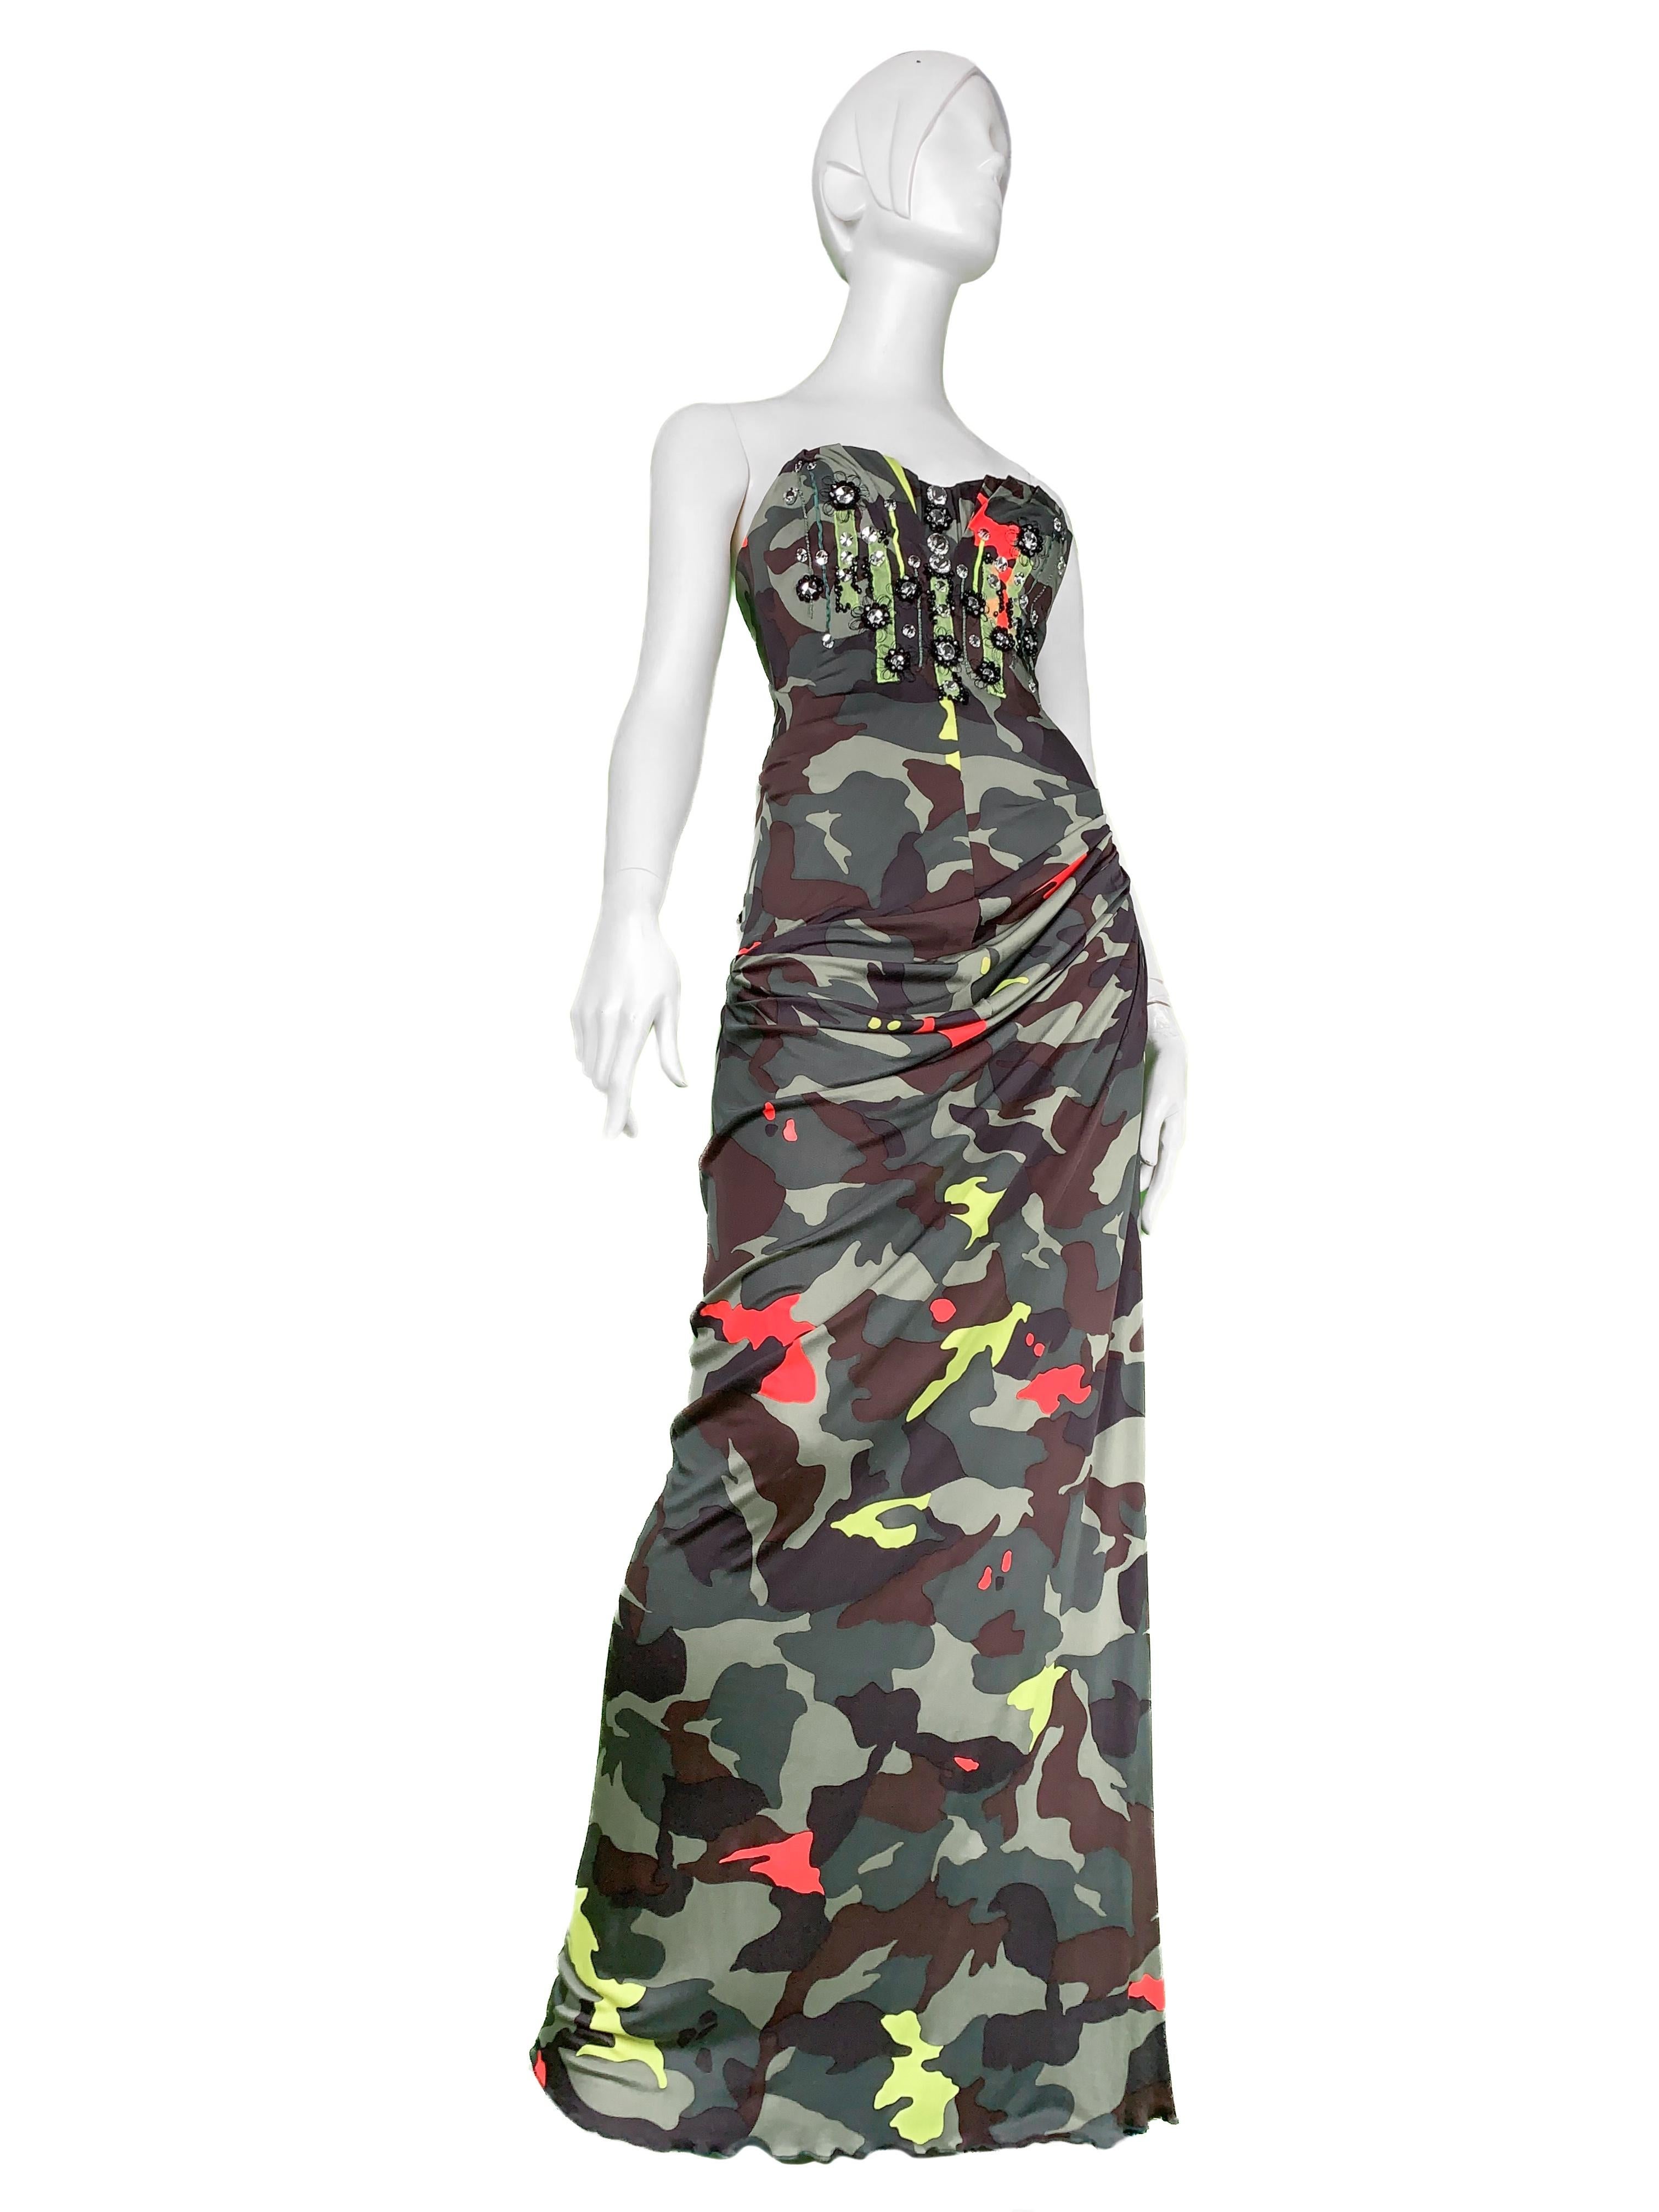 S/S 2010 Runway Blumarine Y2K Corseted Crystal Embellished Printed Bustier Dress 1